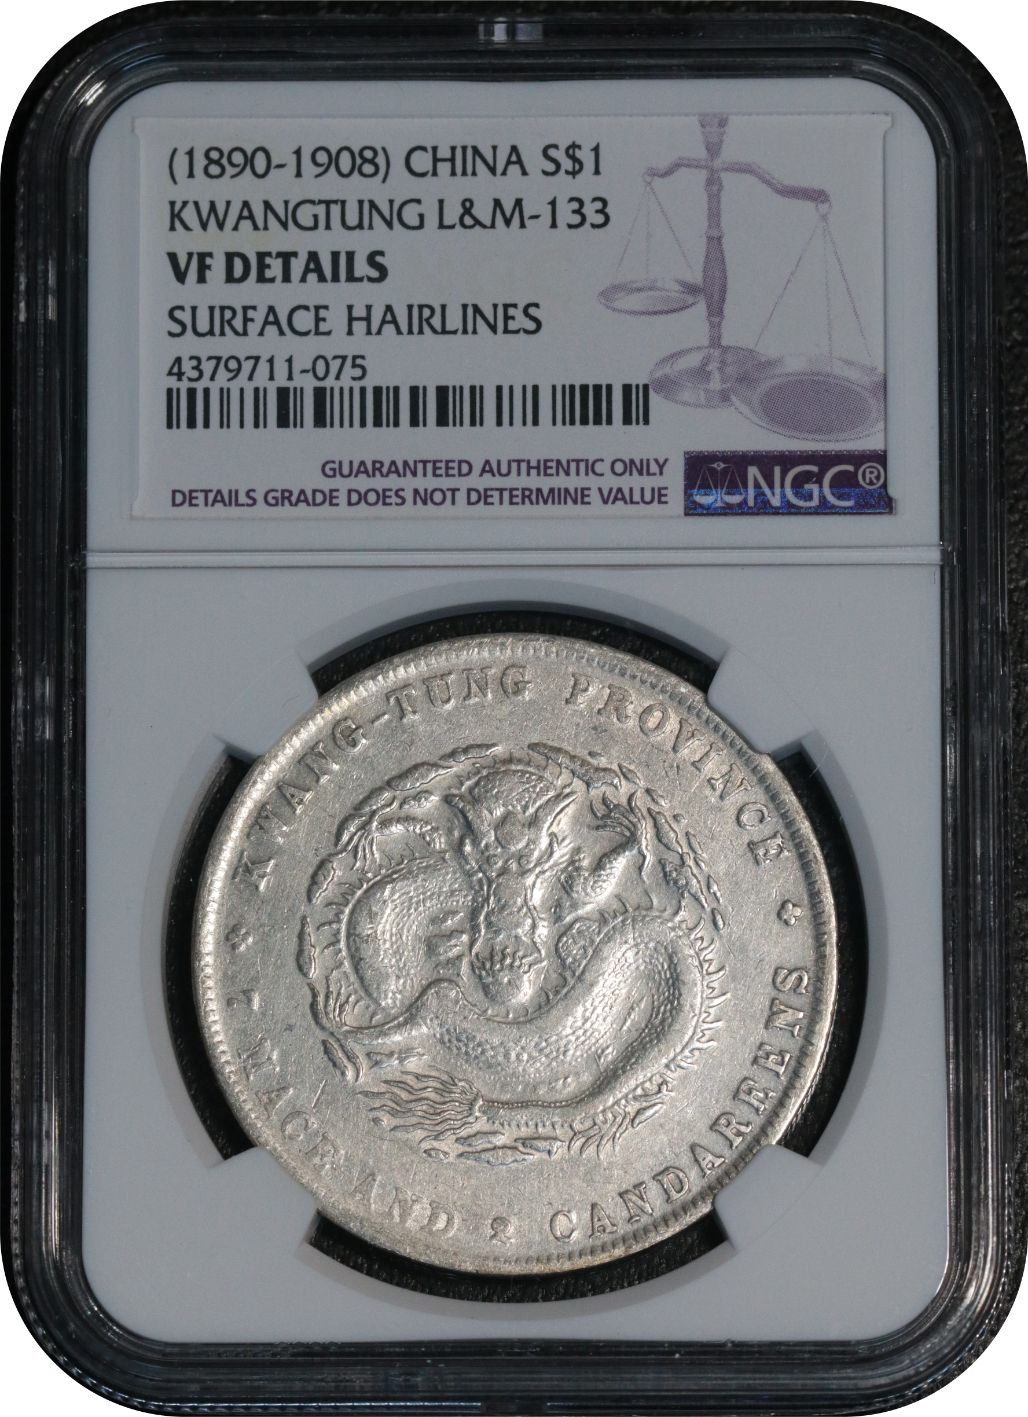 China 1890-1908 Silver Coin KwangTung $1 NGC VF Details 